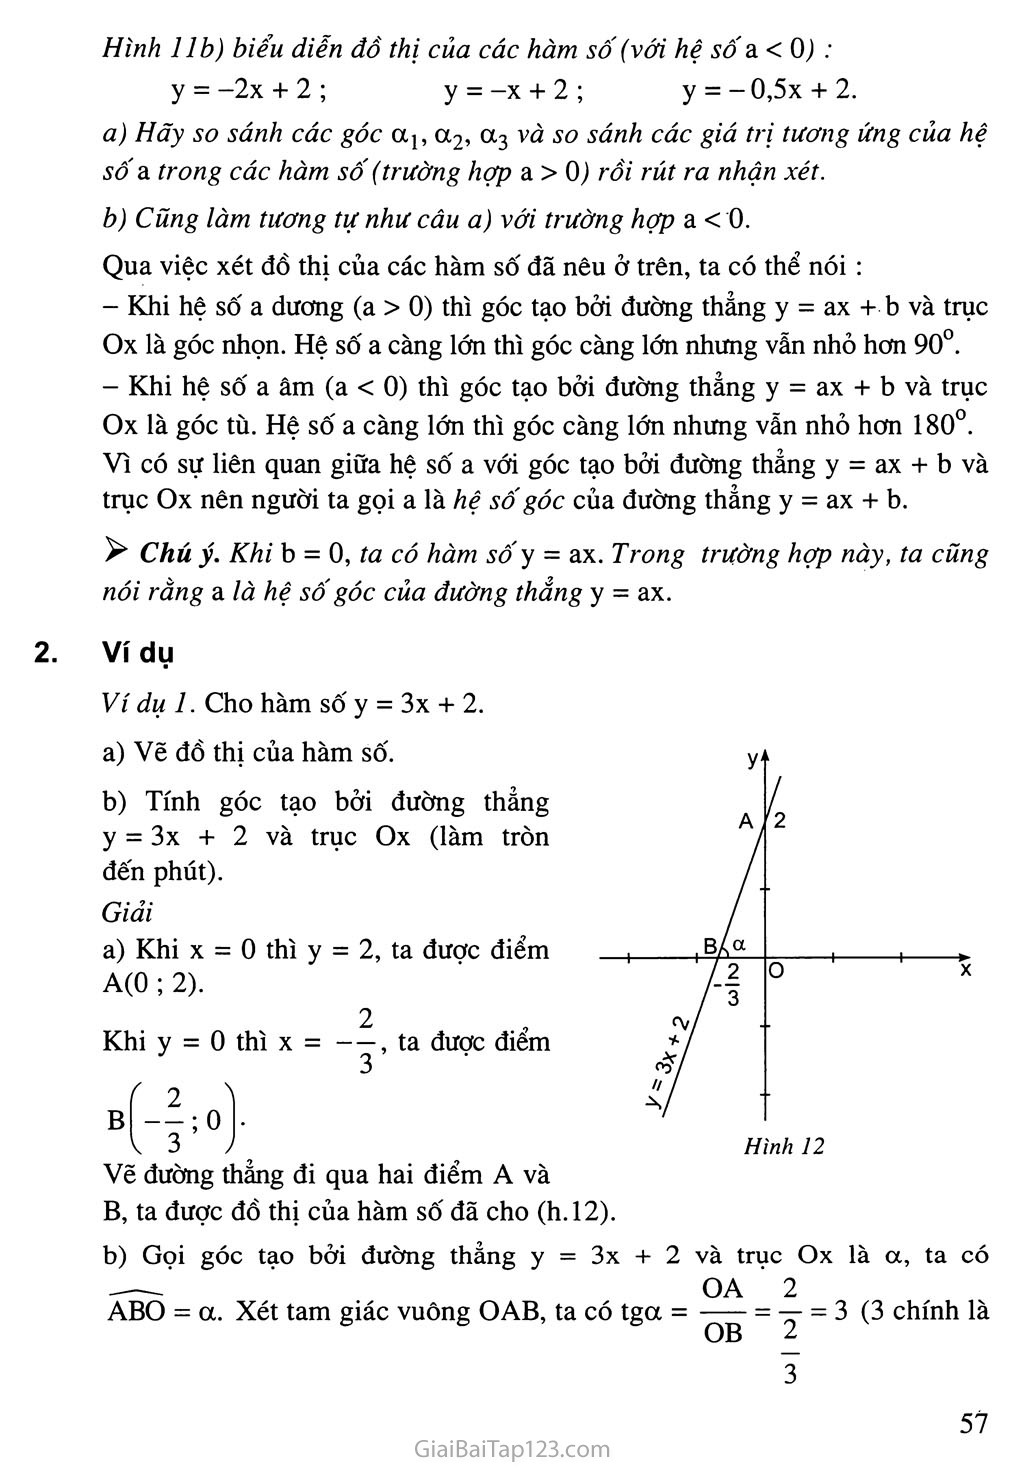 Bài 5. Hệ số góc của đường thẳng y = ax + b (a khác 0) trang 3